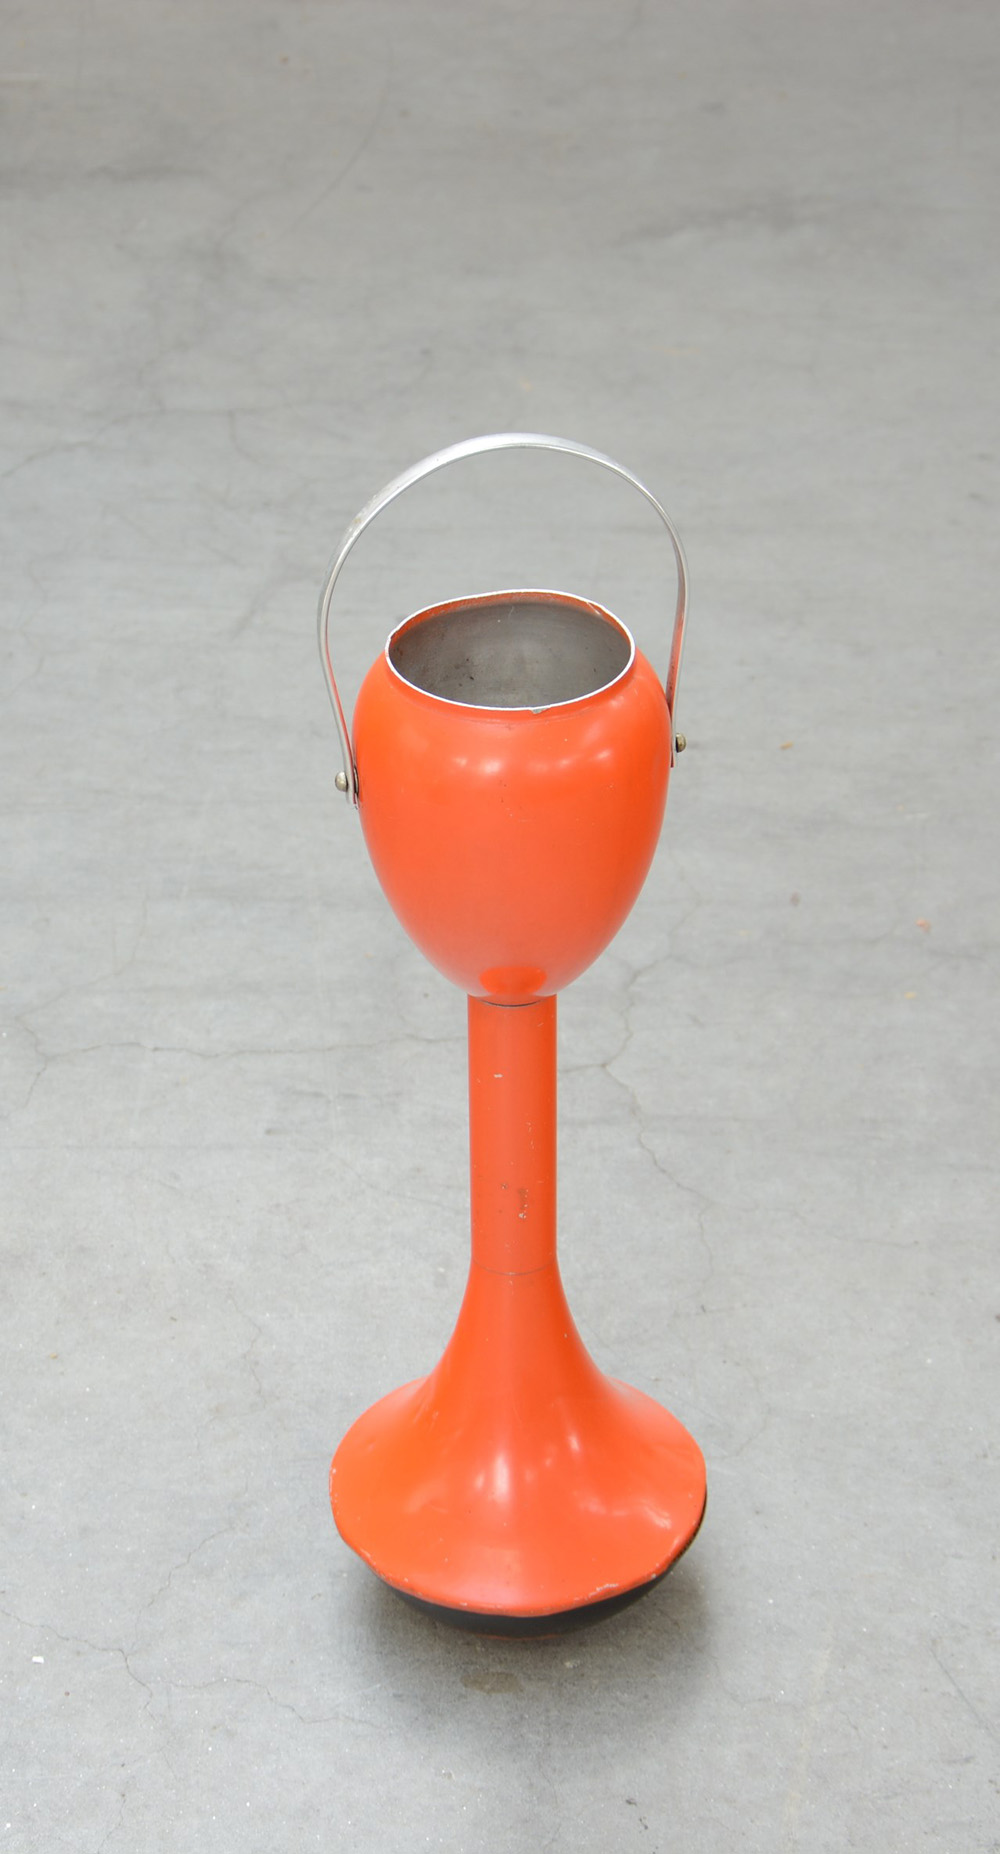 Posacenere da terra in alluminio smaltato arancione, anni 60 del